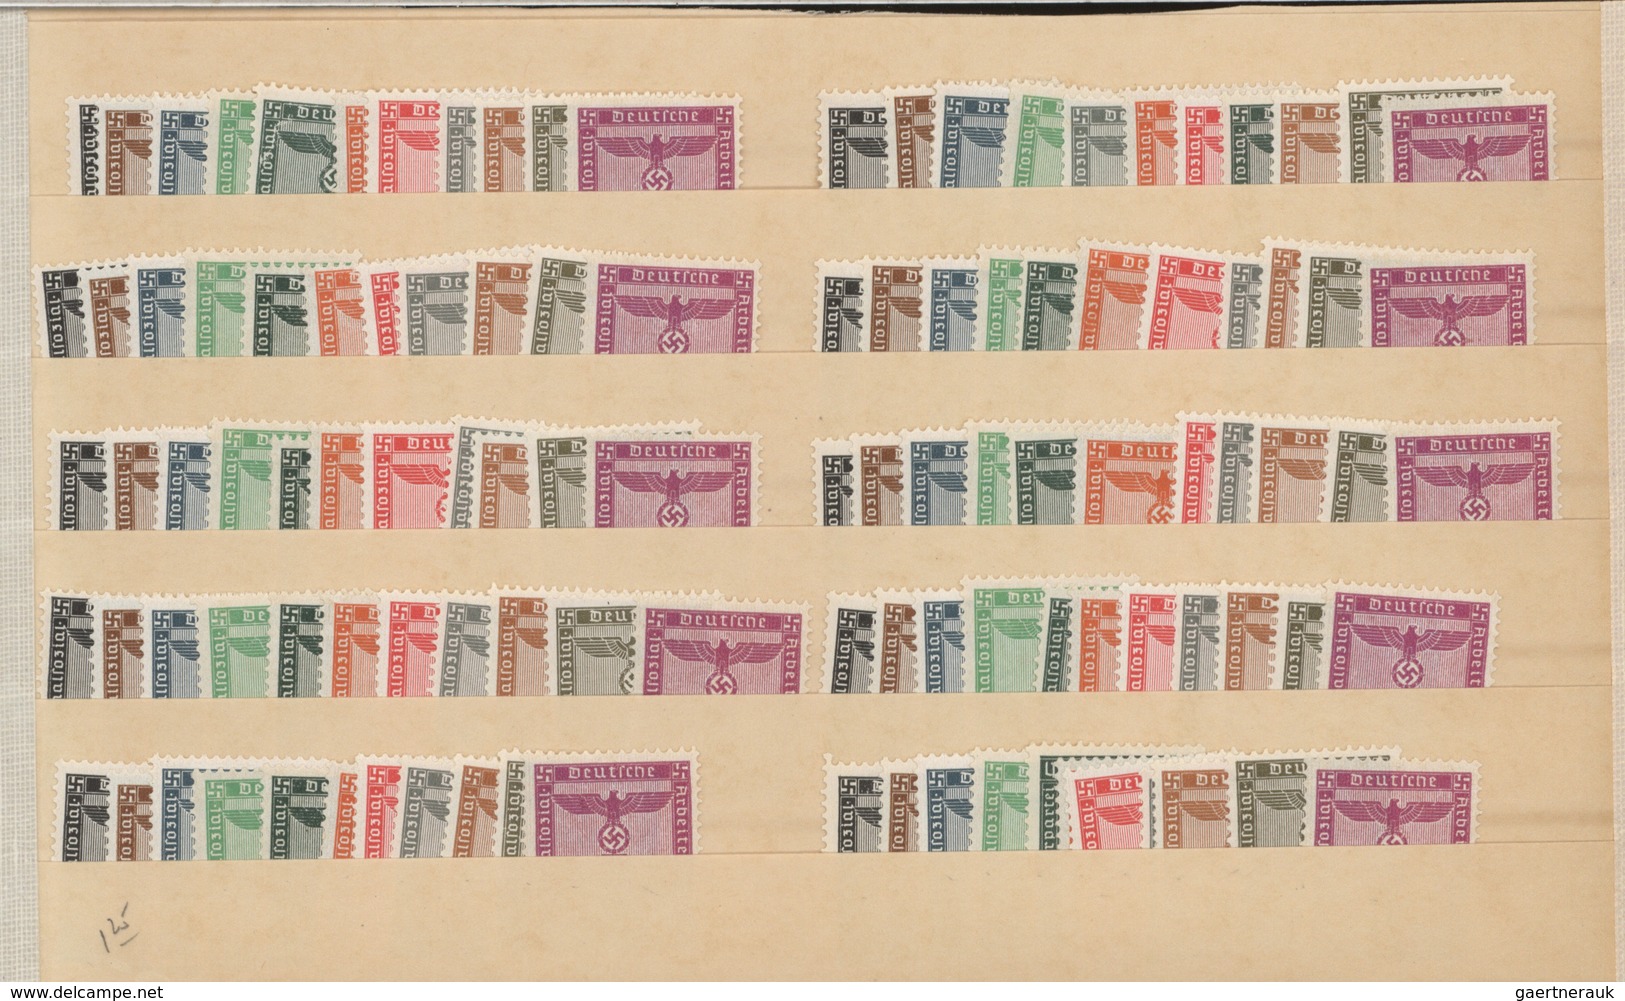 31723 Deutsches Reich - Dienstmarken: 1934/1944, reichhaltiger postfrischer Lagerposten der Behörden- und